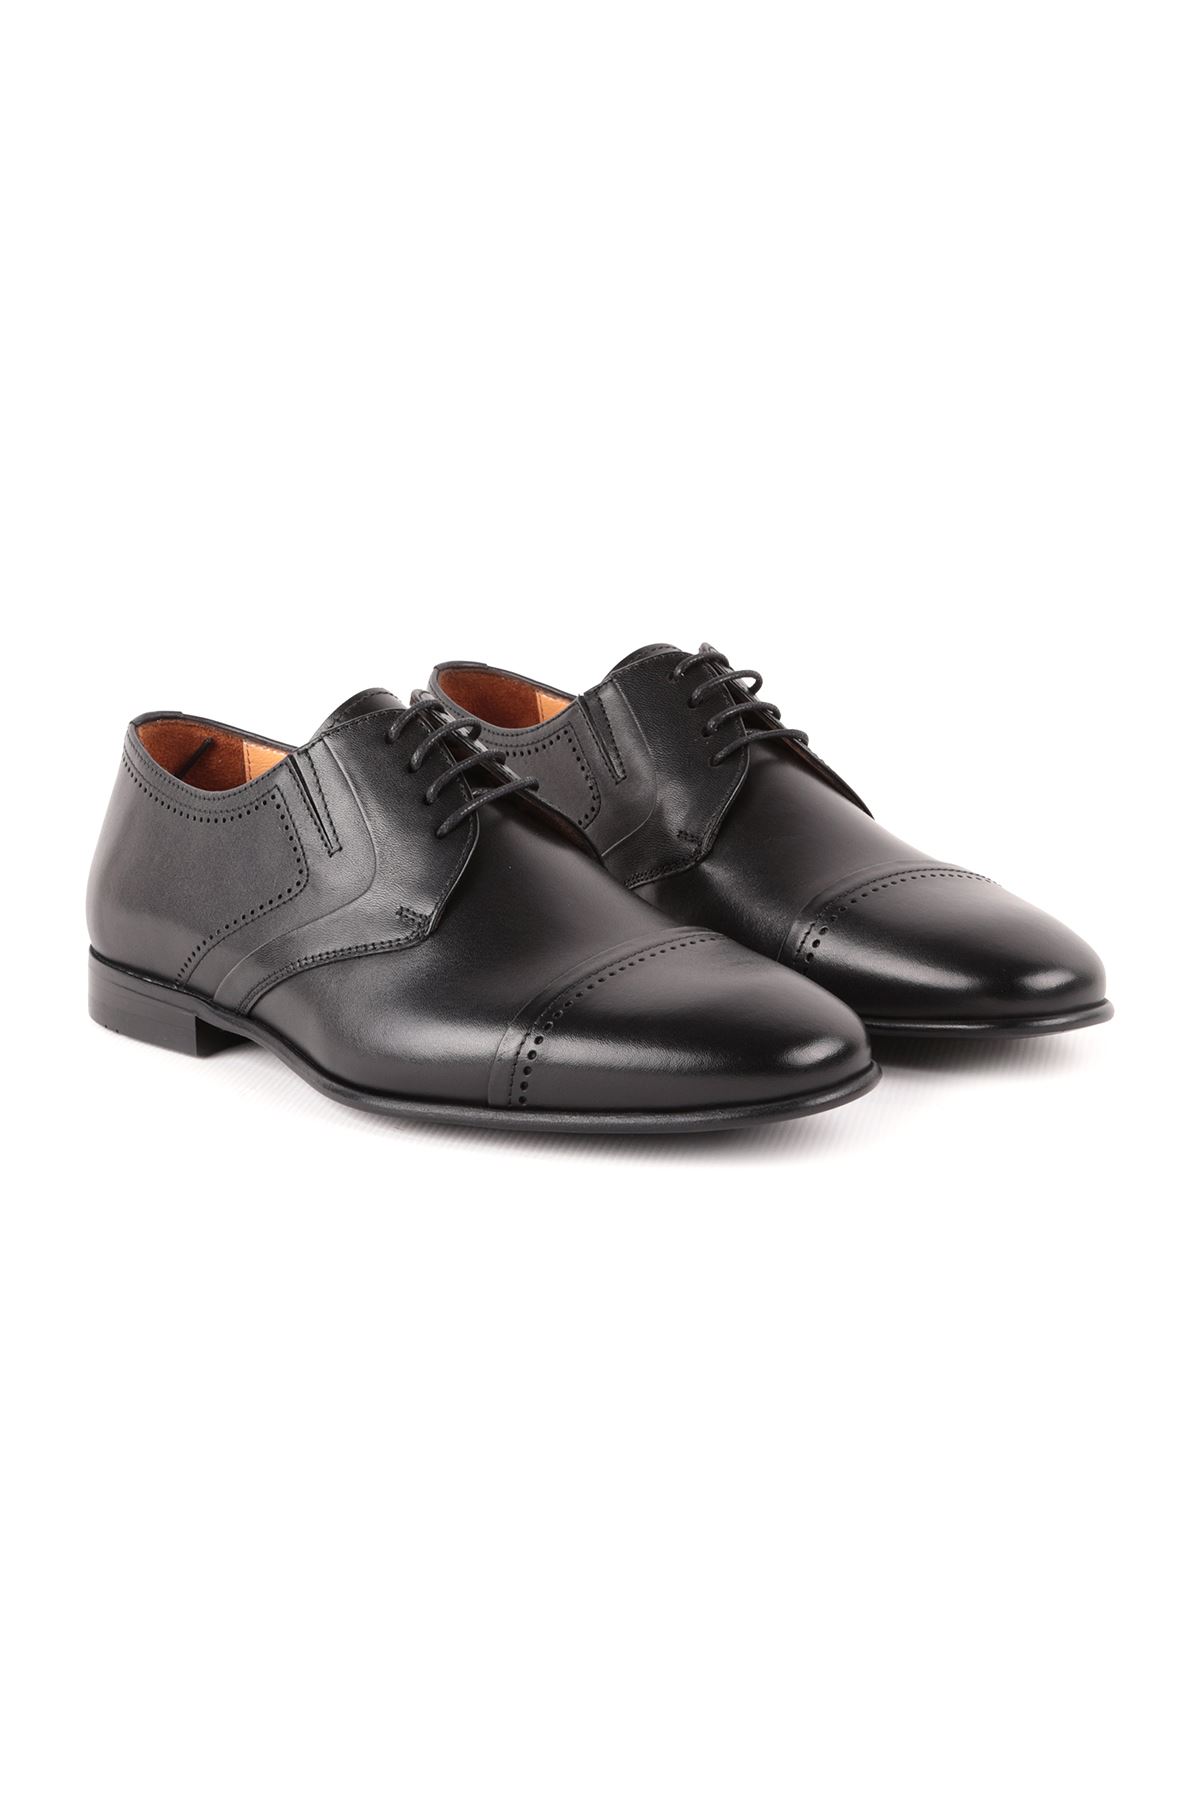 Libero L4796 Siyah Klasik Deri Erkek Ayakkabı